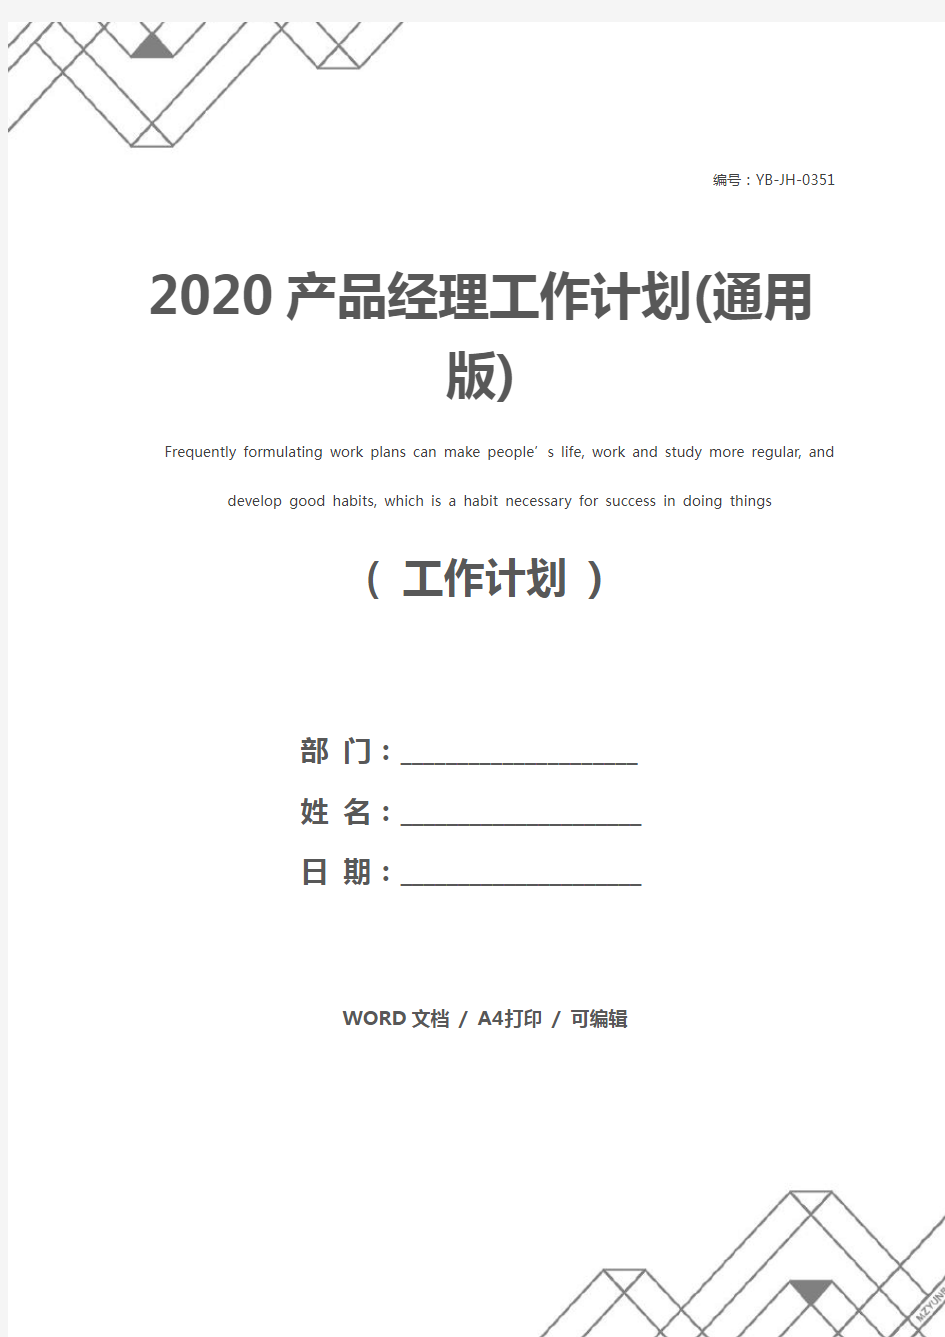 2020产品经理工作计划(通用版)